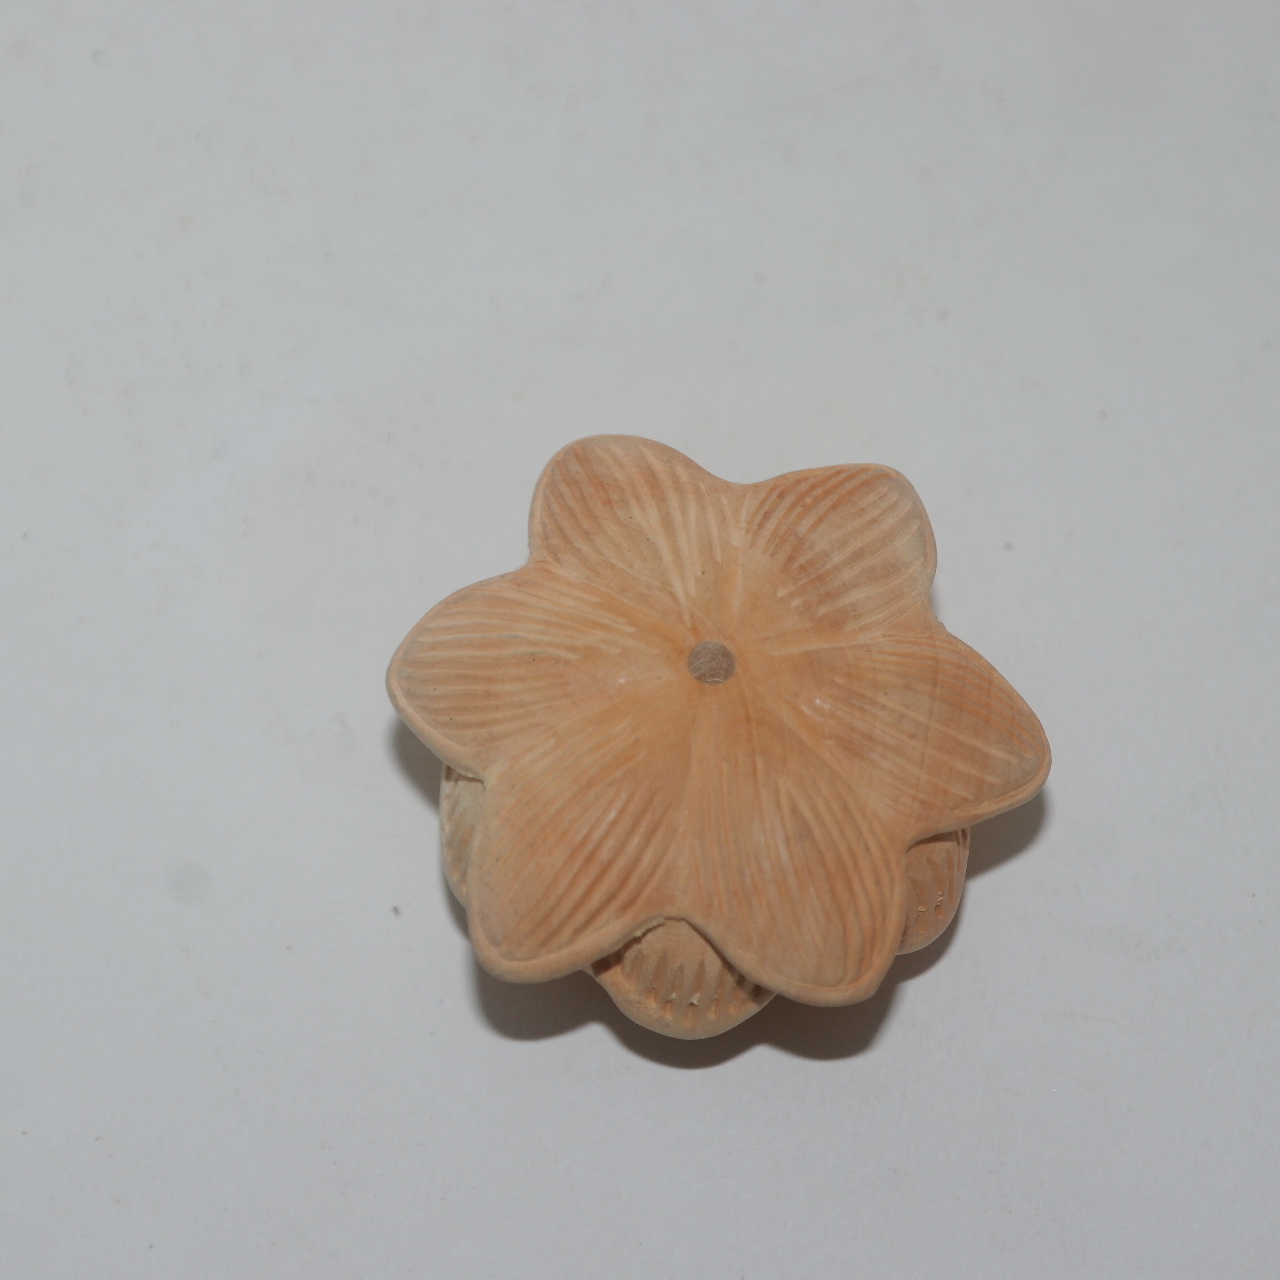 회양목나무를 조각한 연꽃 조각품